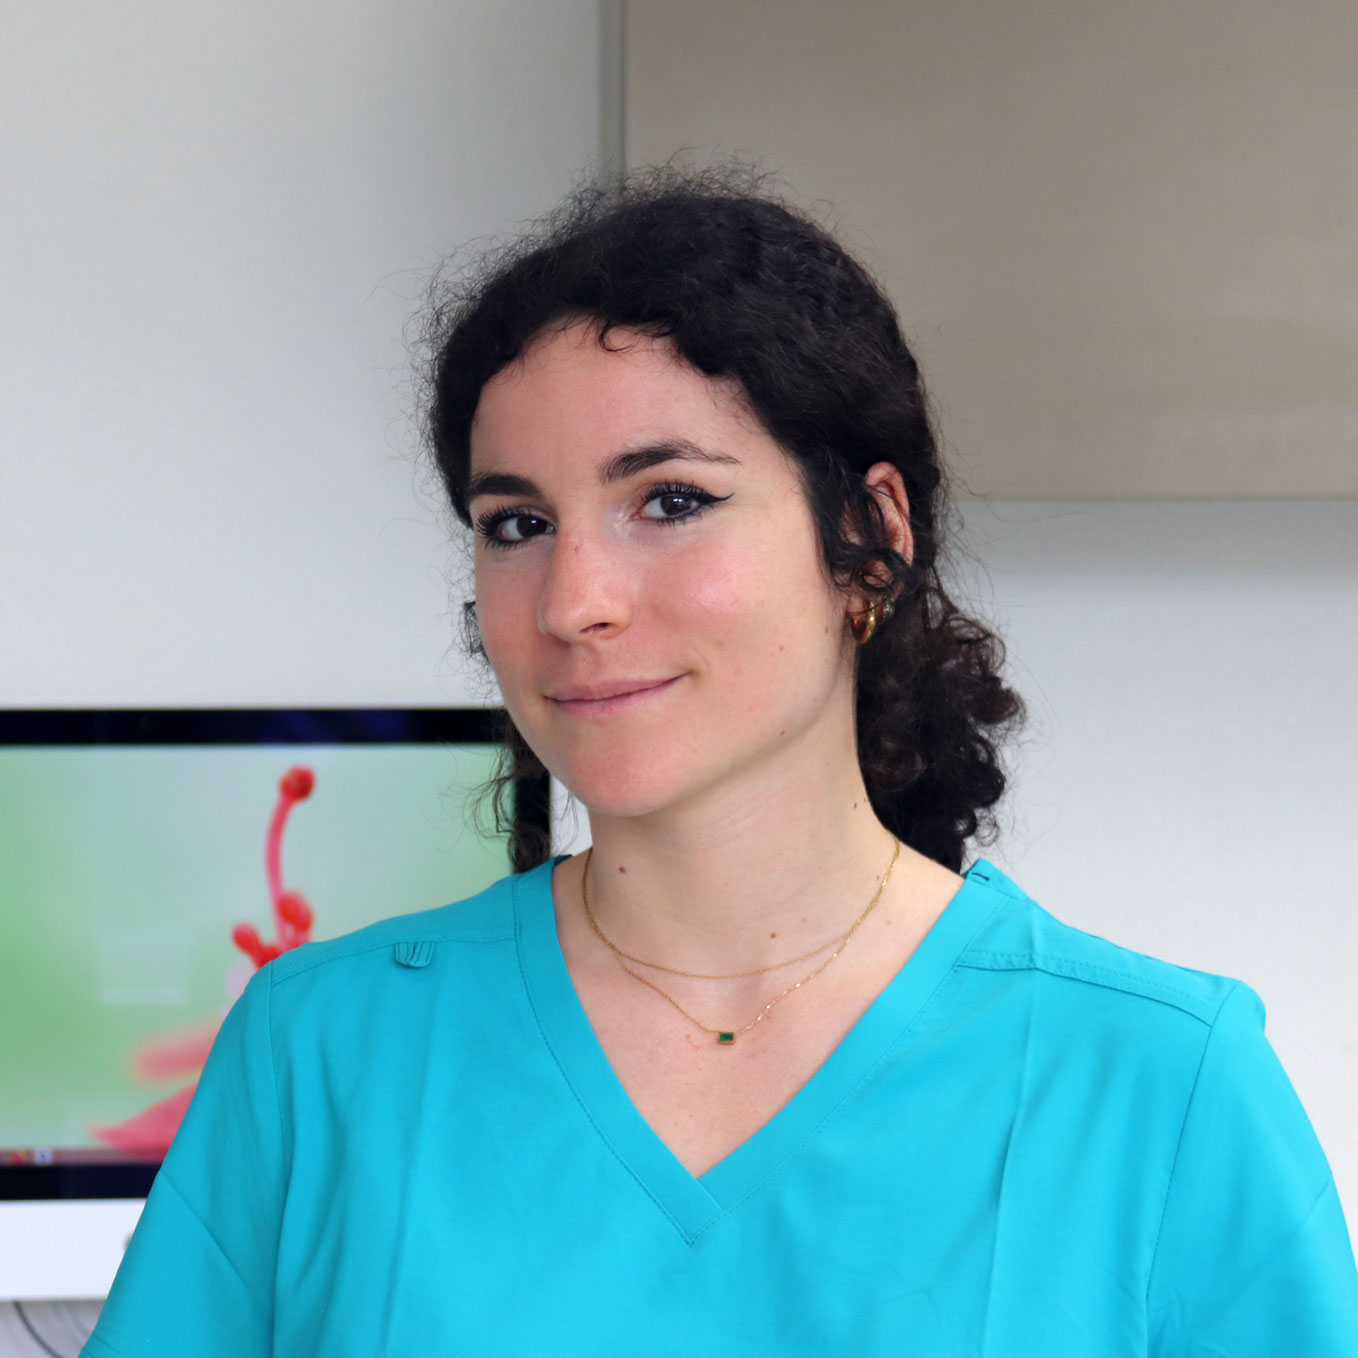 La Dr Chloé Hinschberger à Bulle est une médecin dentiste prenant les nouveaux patients et les urgences.